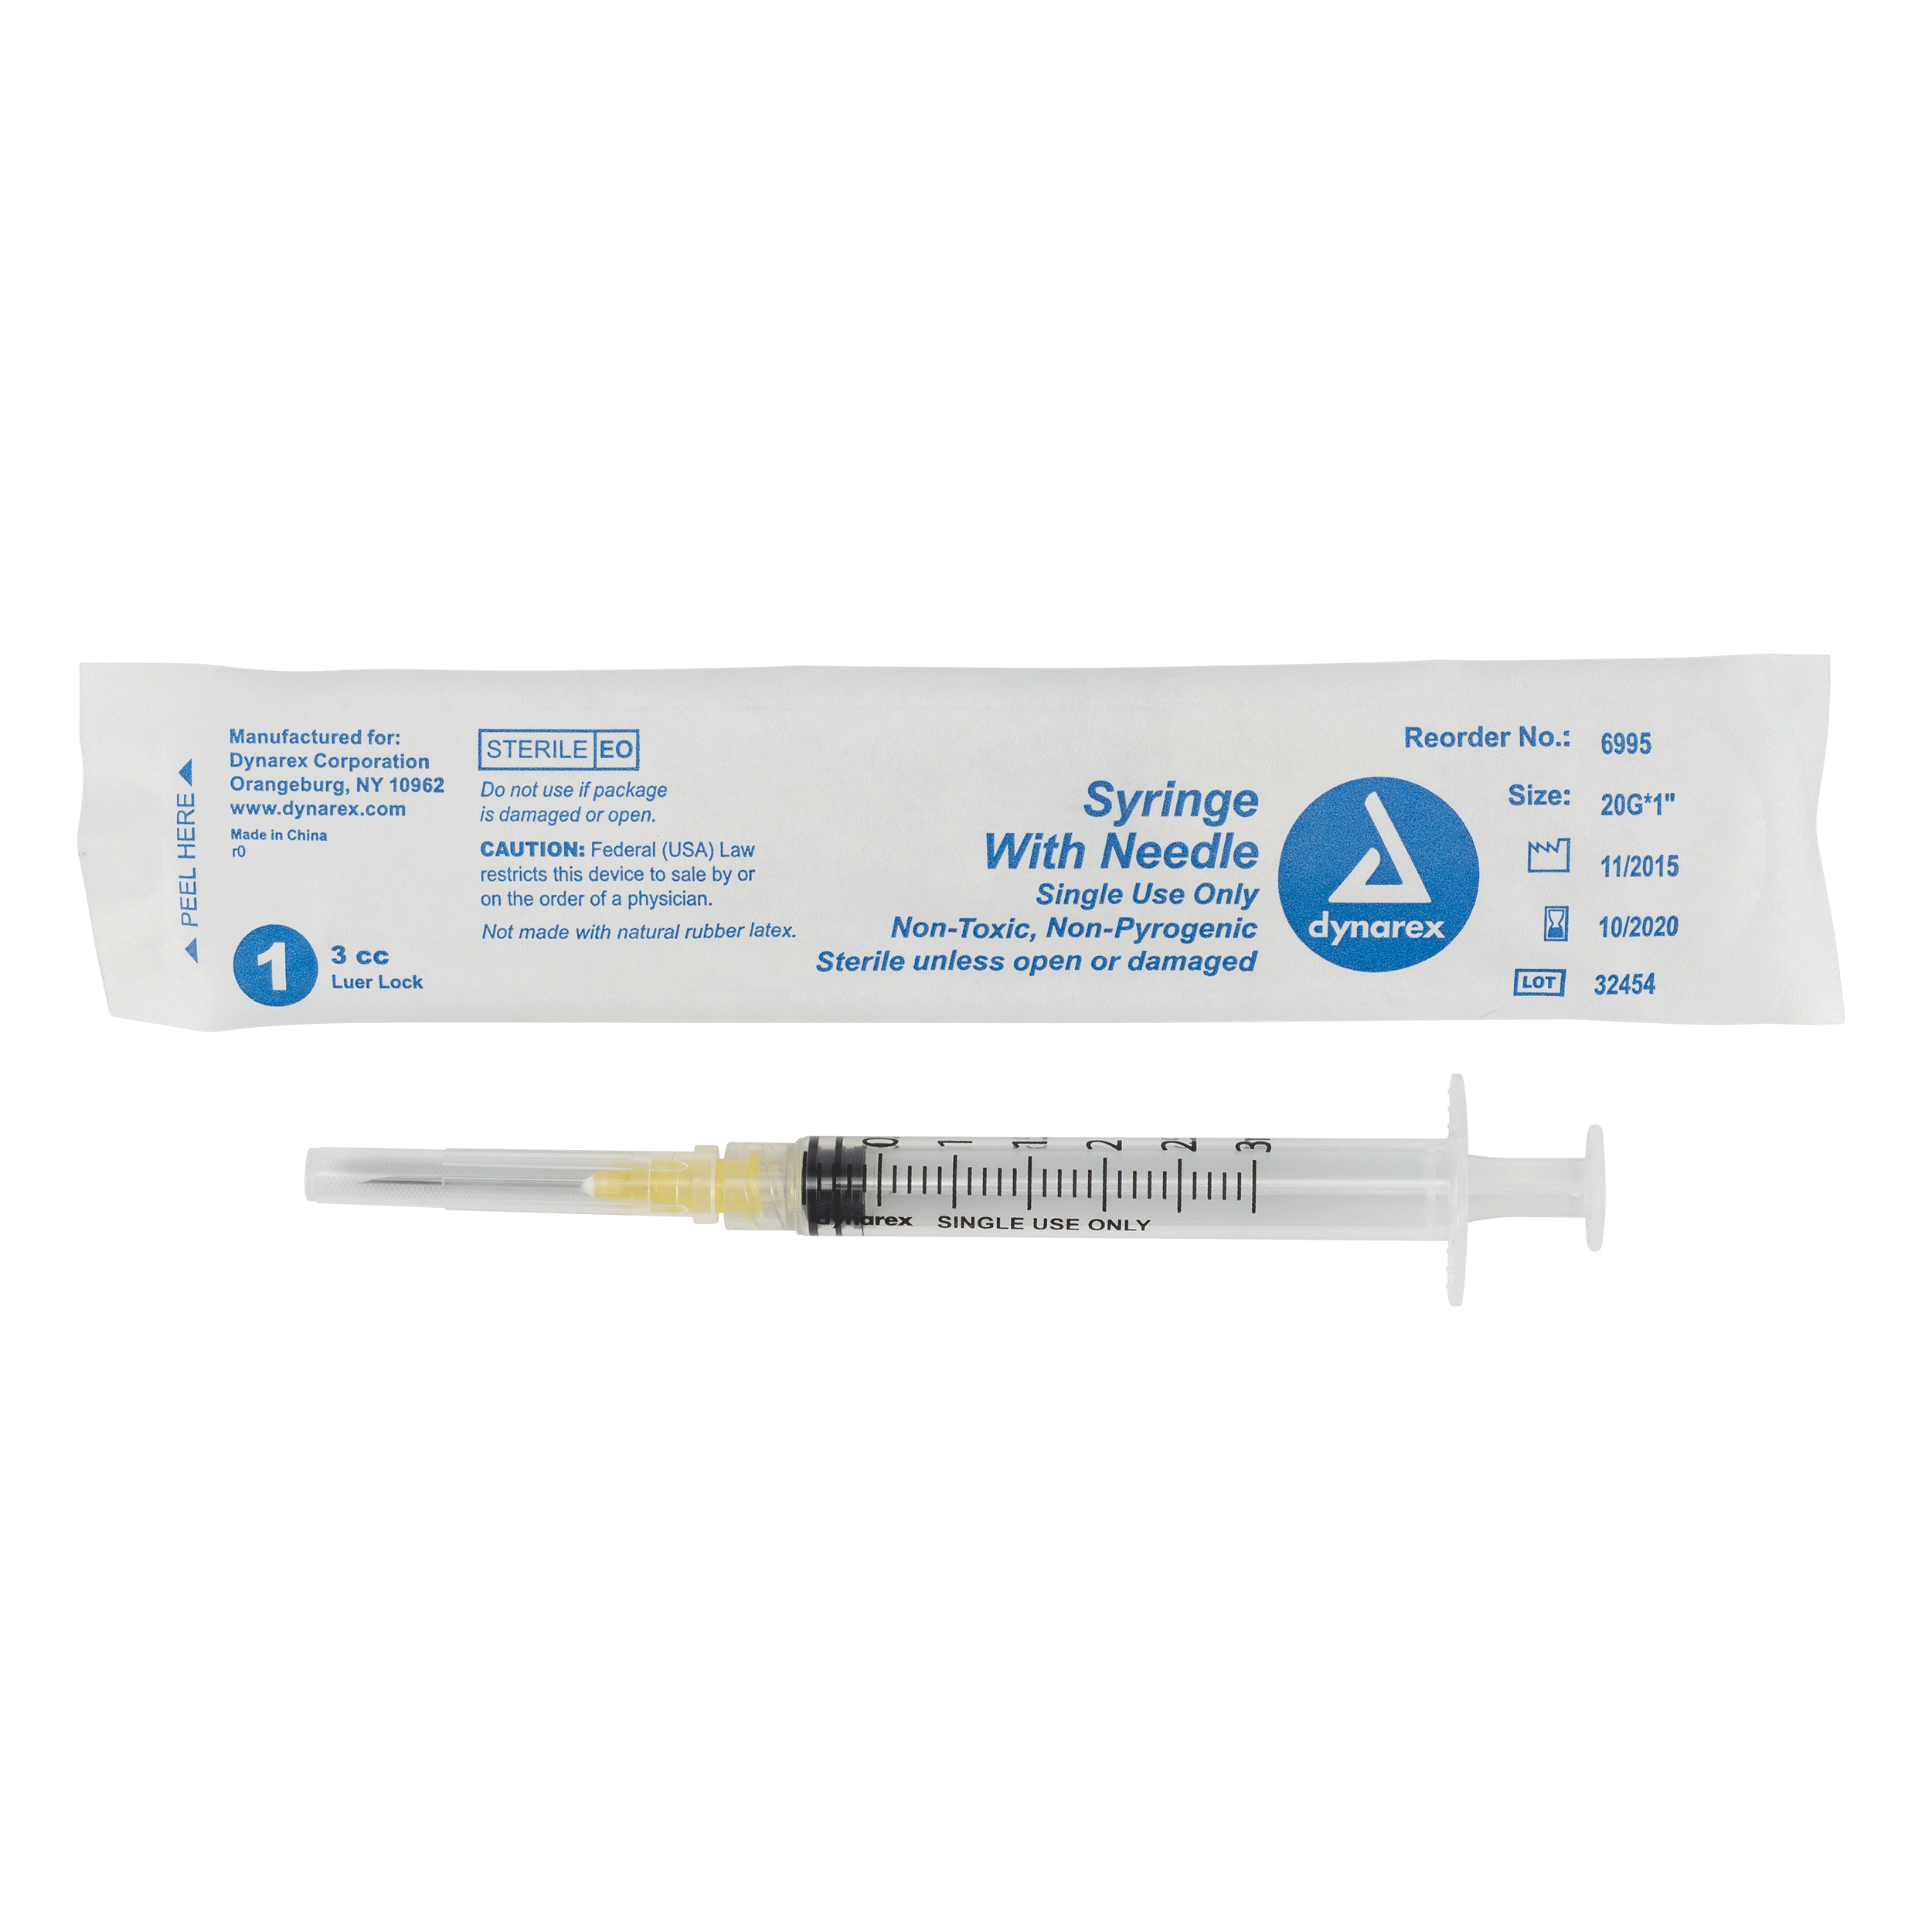 Syringes With Needle - 3cc - 20G, 1